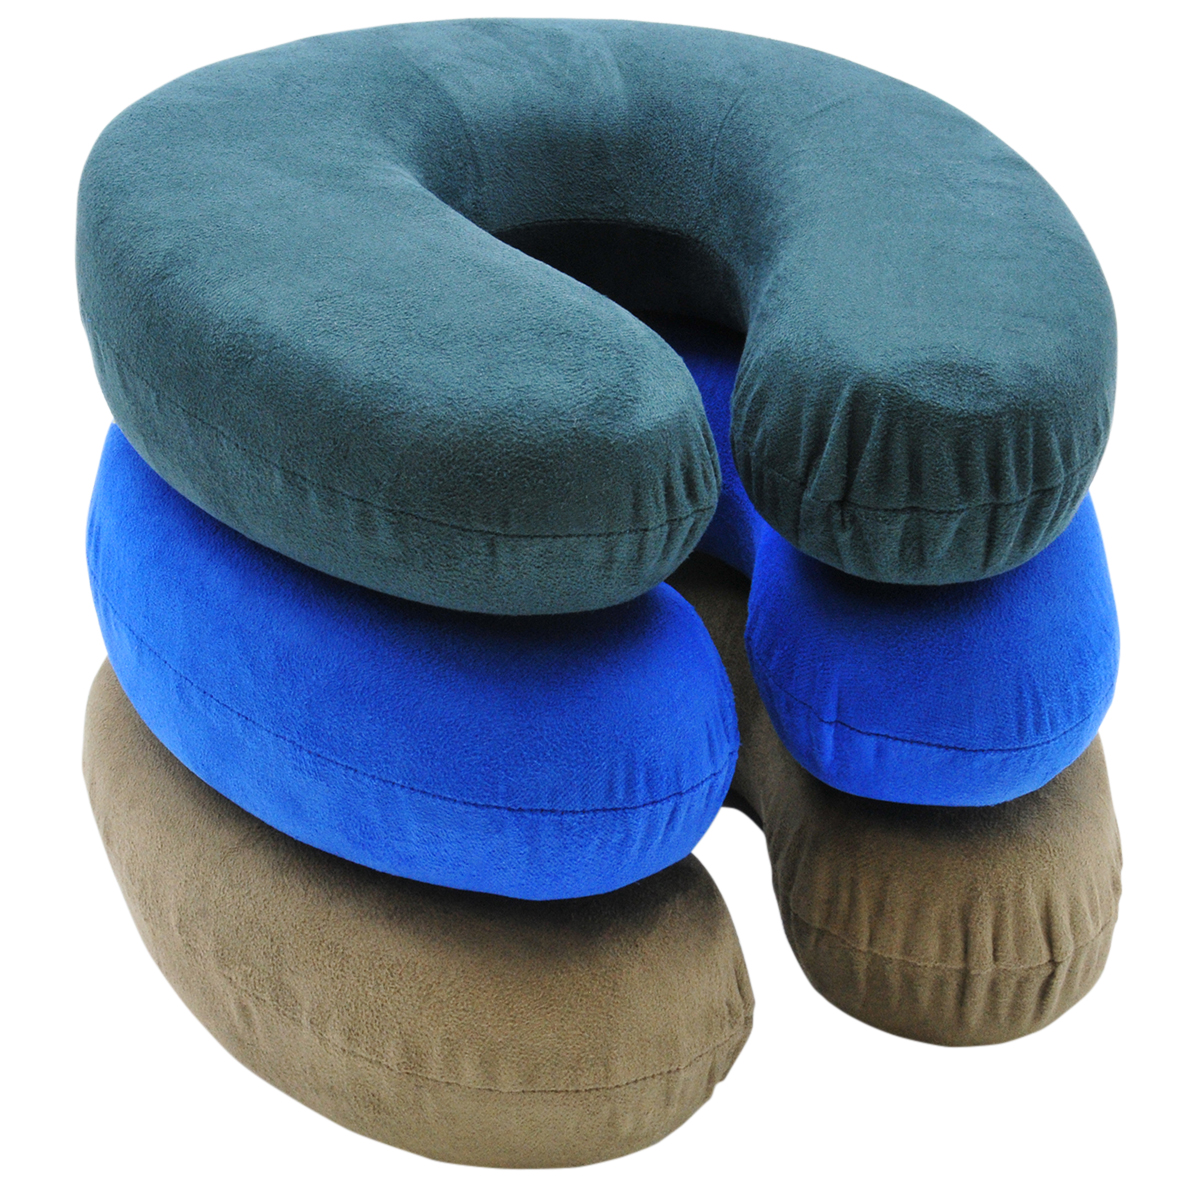 BLackCanyon Gear Neck Pillow RP2805 Memory Foam Suede Neck Support Headrest Pillow-Assorted